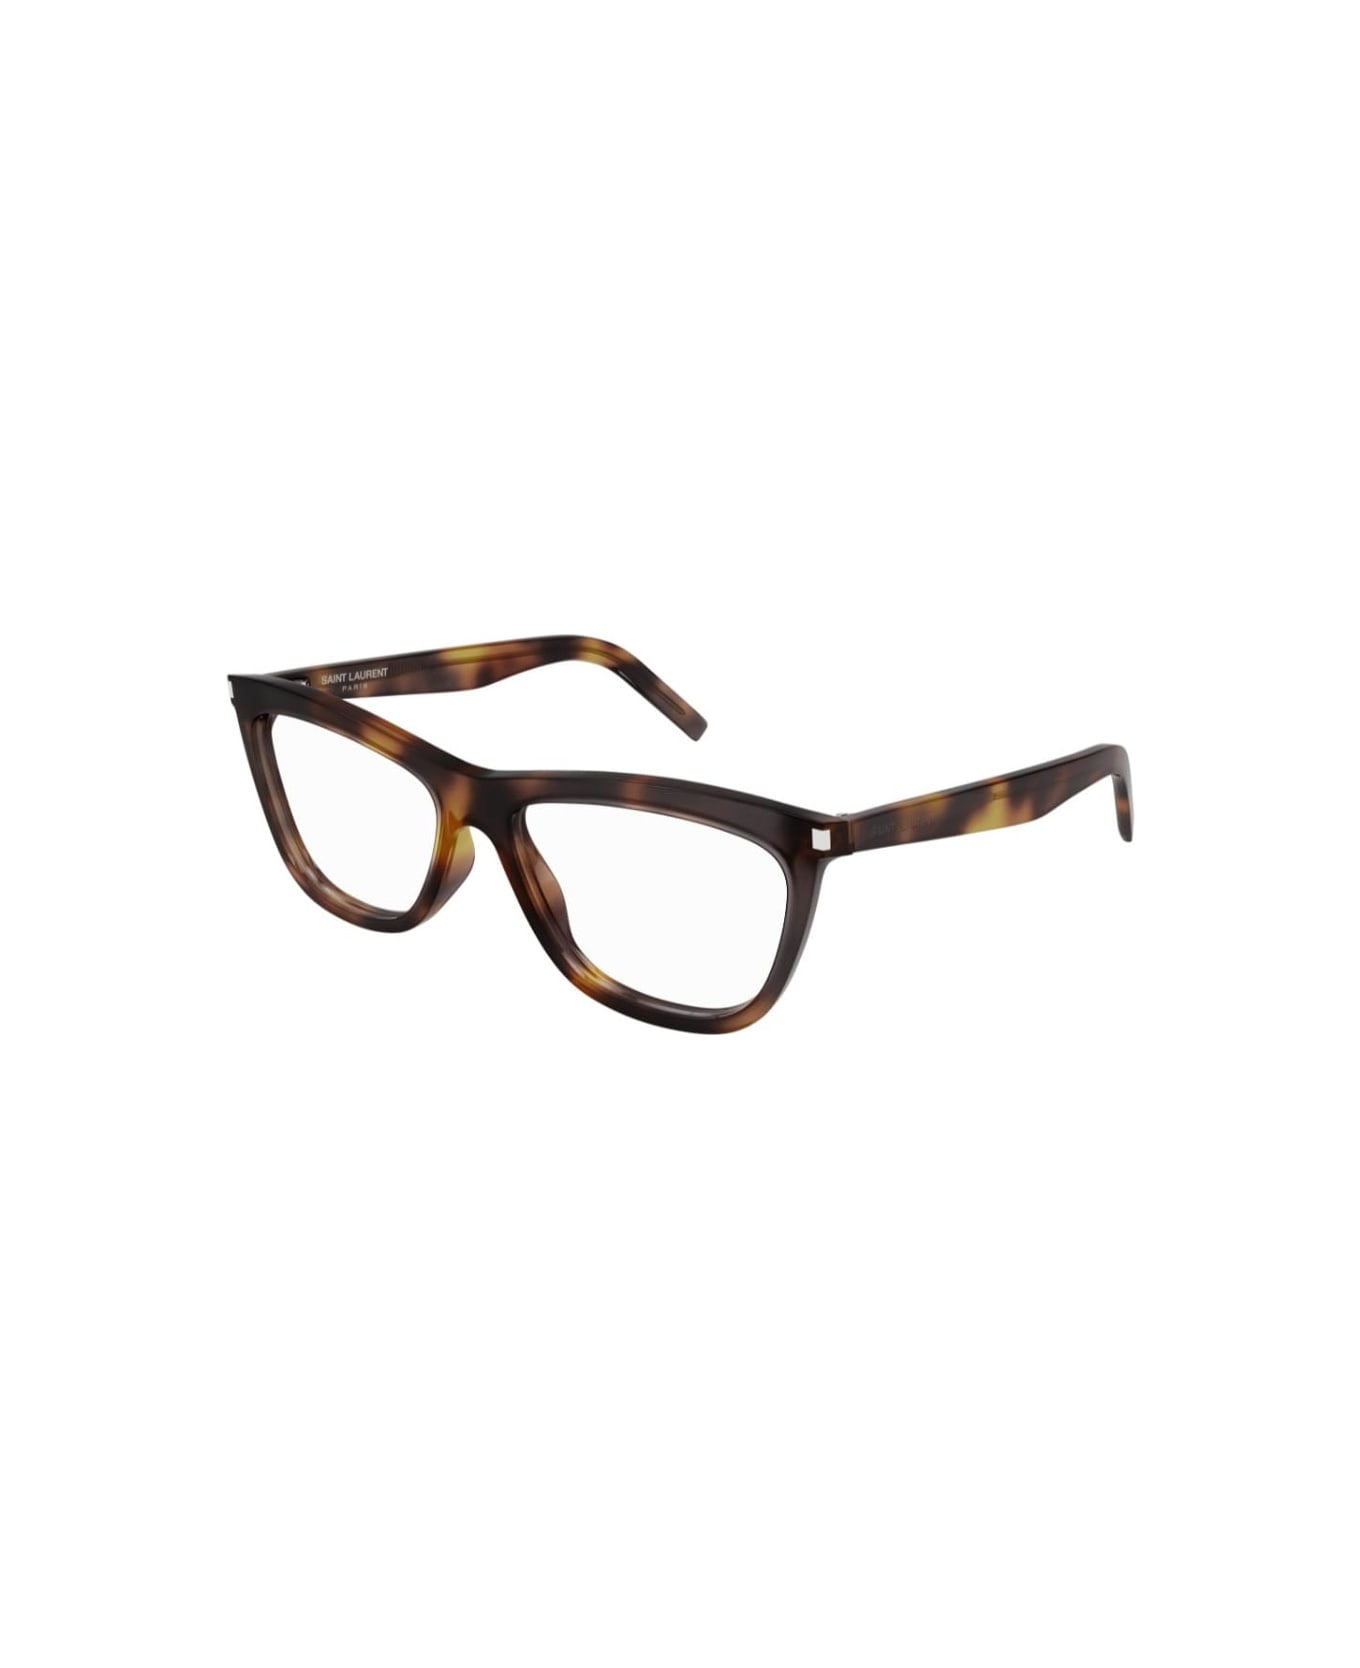 Saint Laurent Eyewear sl 517 002 Glasses アイウェア